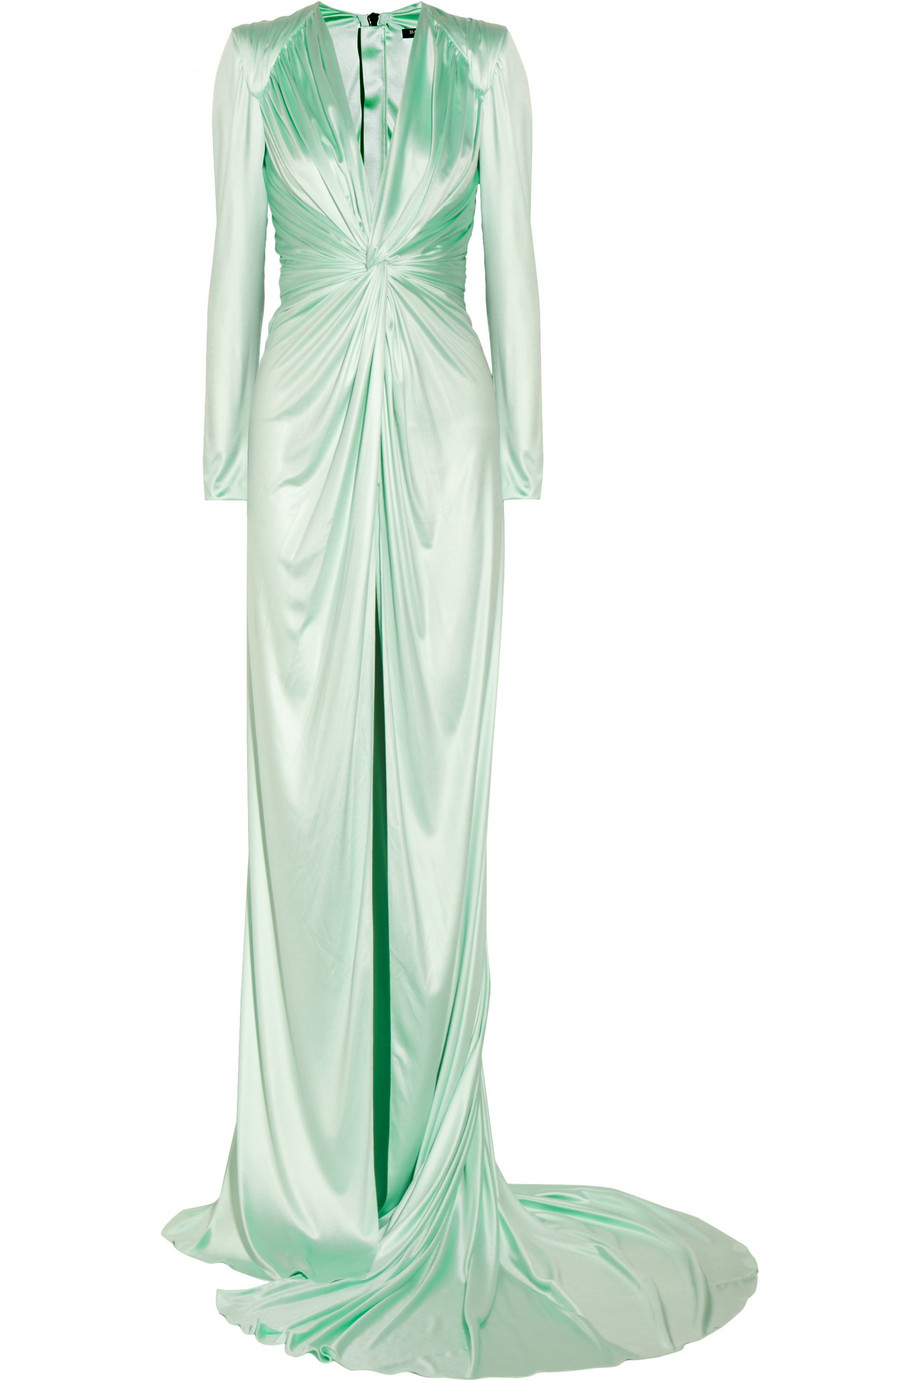 Balmain Draped Sateenjersey Gown in Mint (Green) - Lyst